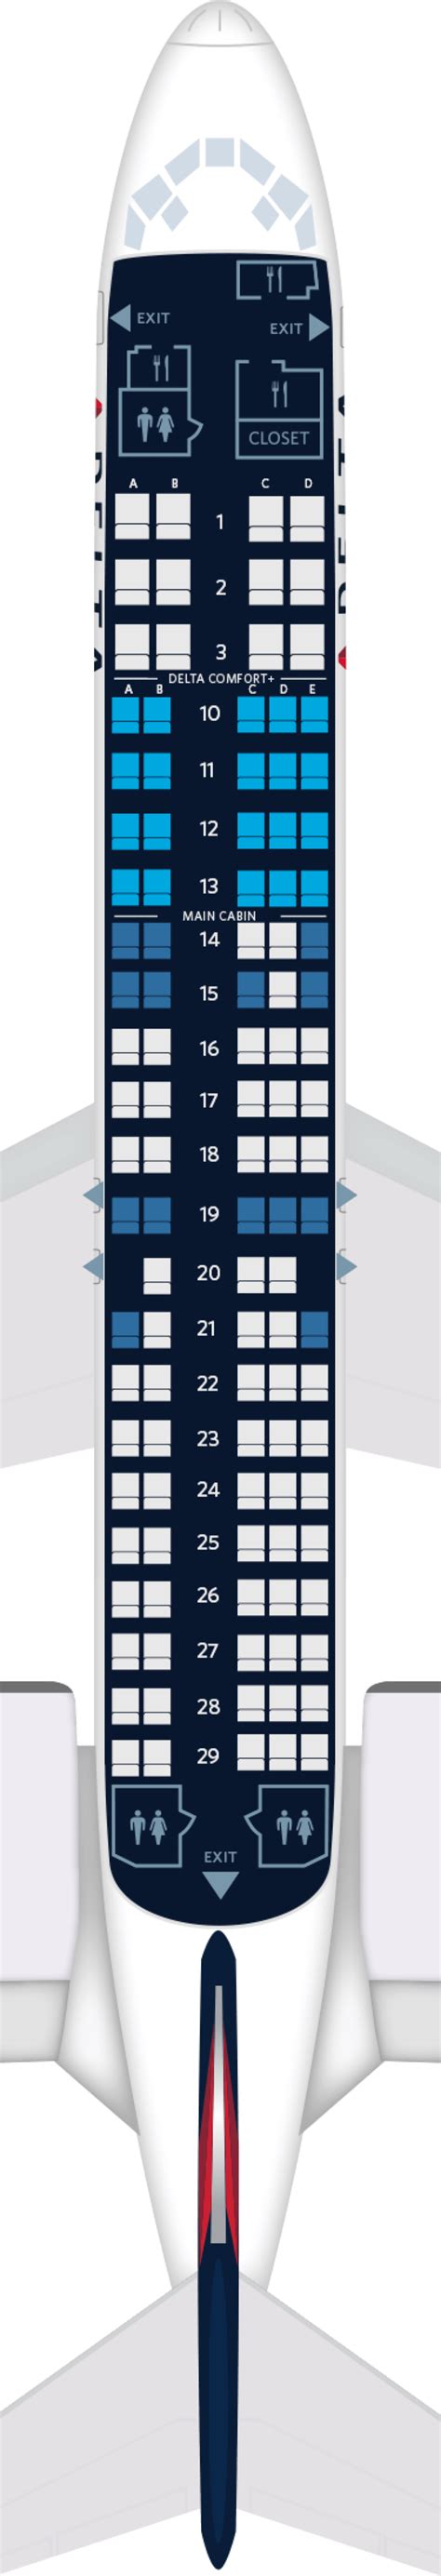 boeing 717 seat map delta